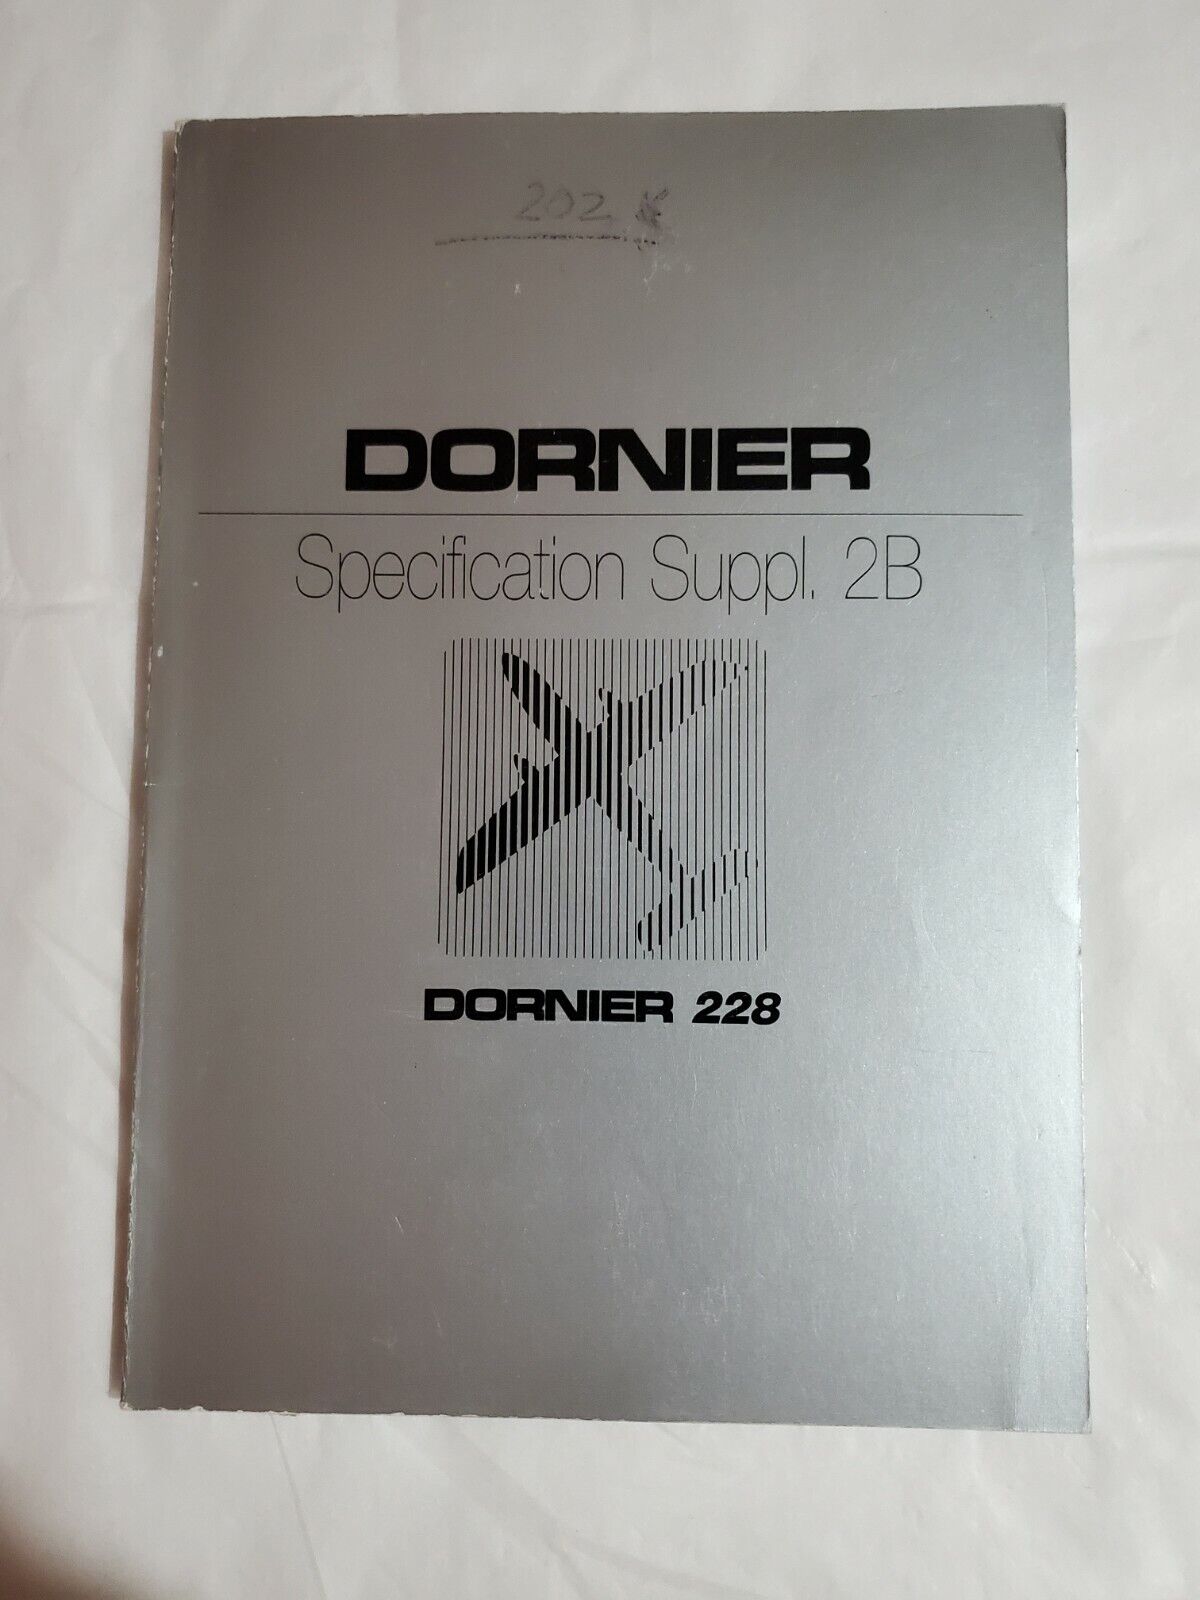 Dornier 228 Specification Suppl. 2B